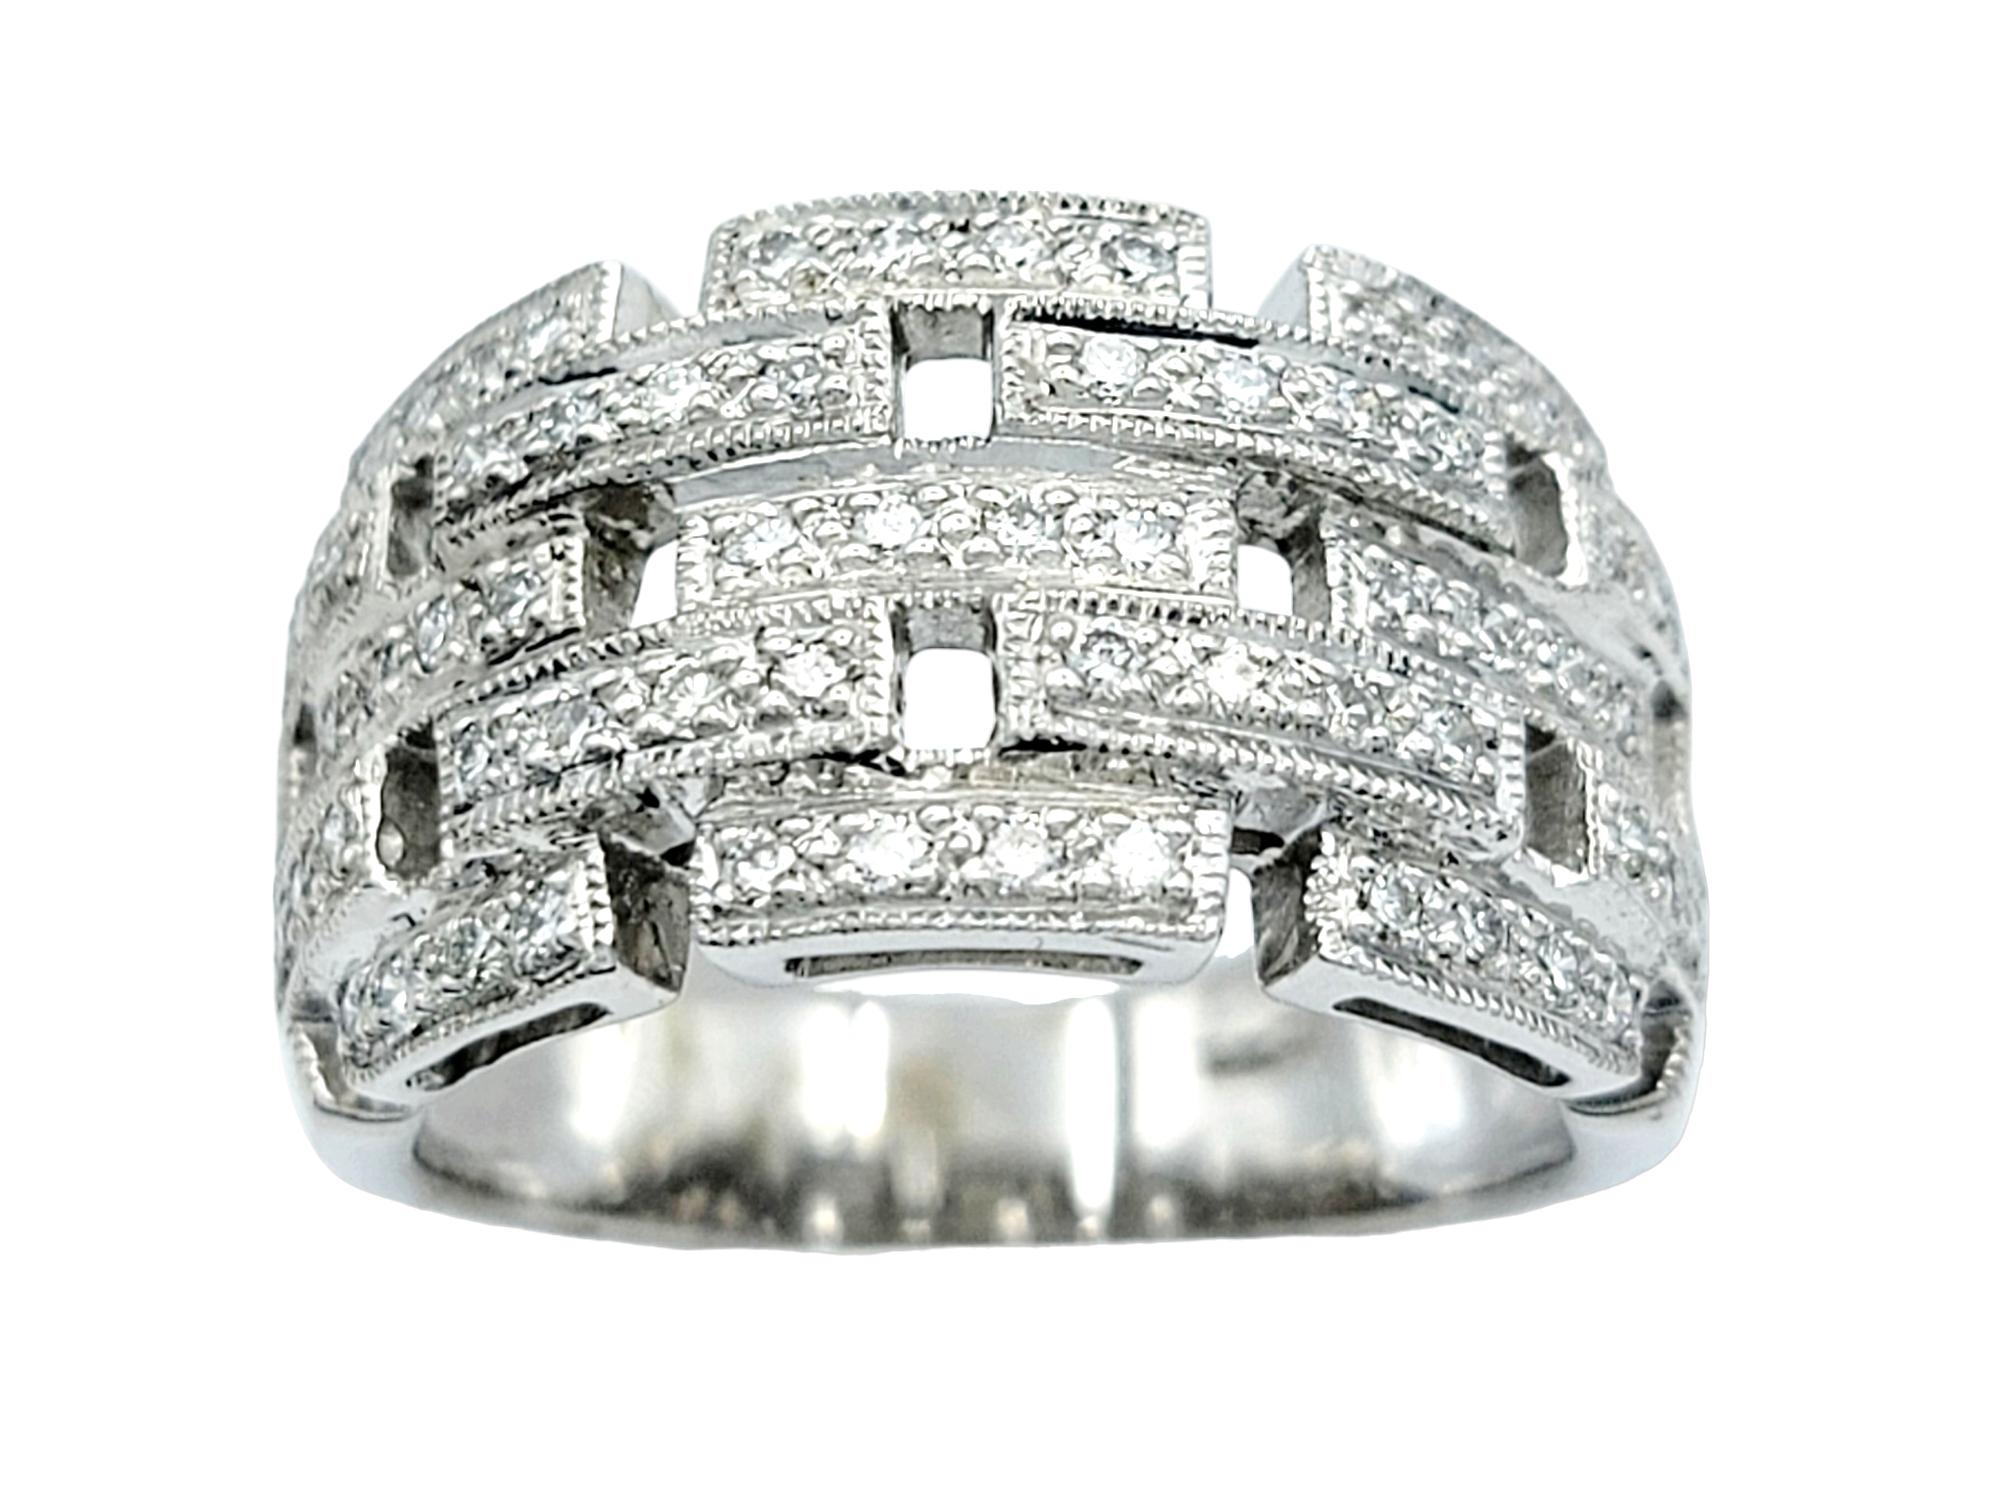 Ring Größe: 6.5

Eleganz trifft auf zeitgenössisches Design in diesem atemberaubenden Diamantring, gefasst in exquisites 18 Karat Weißgold. Der Ring besticht durch sein fesselndes Panther-Glieder-Design, das ein Muster aus funkelnden, gestapelten